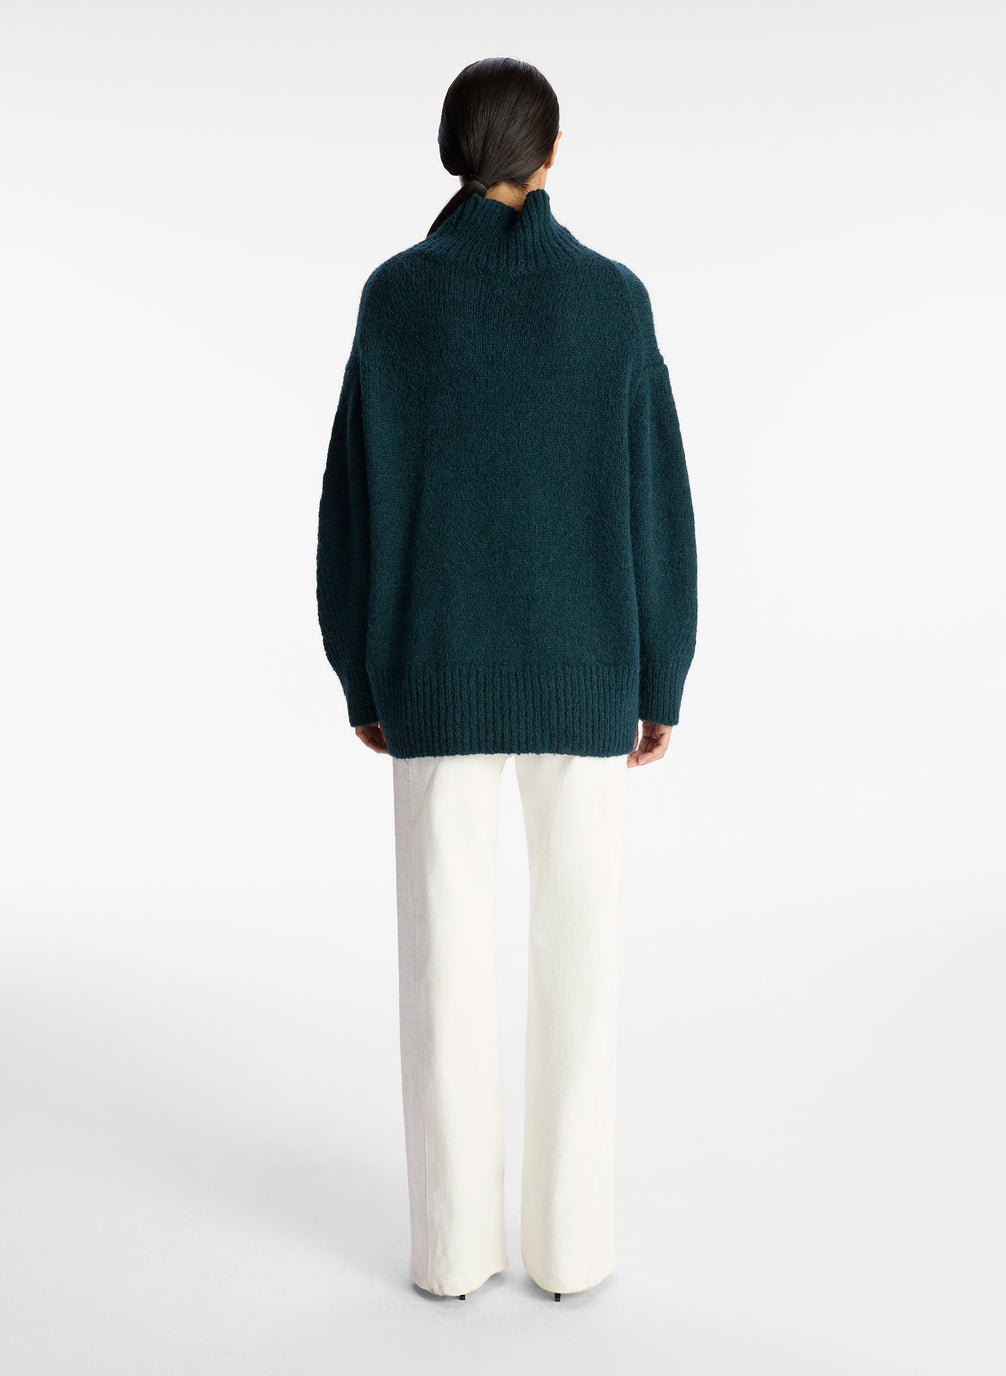 Nelson Wool Sweater